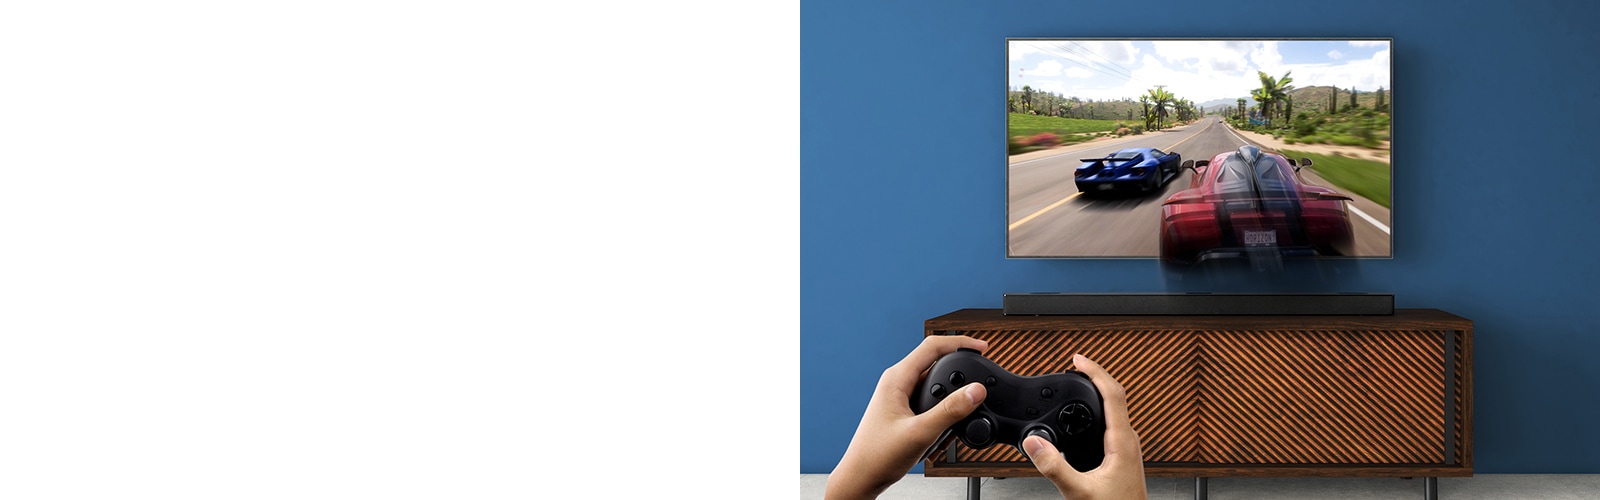 На стена има окачен телевизор LG, на който се вижда състезателна игра. Саундбар LG е поставен на кафяв рафт, точно под телевизора LG. Мъж държи джойстик. В горния ляв ъгъл е показано обозначението НОВО.